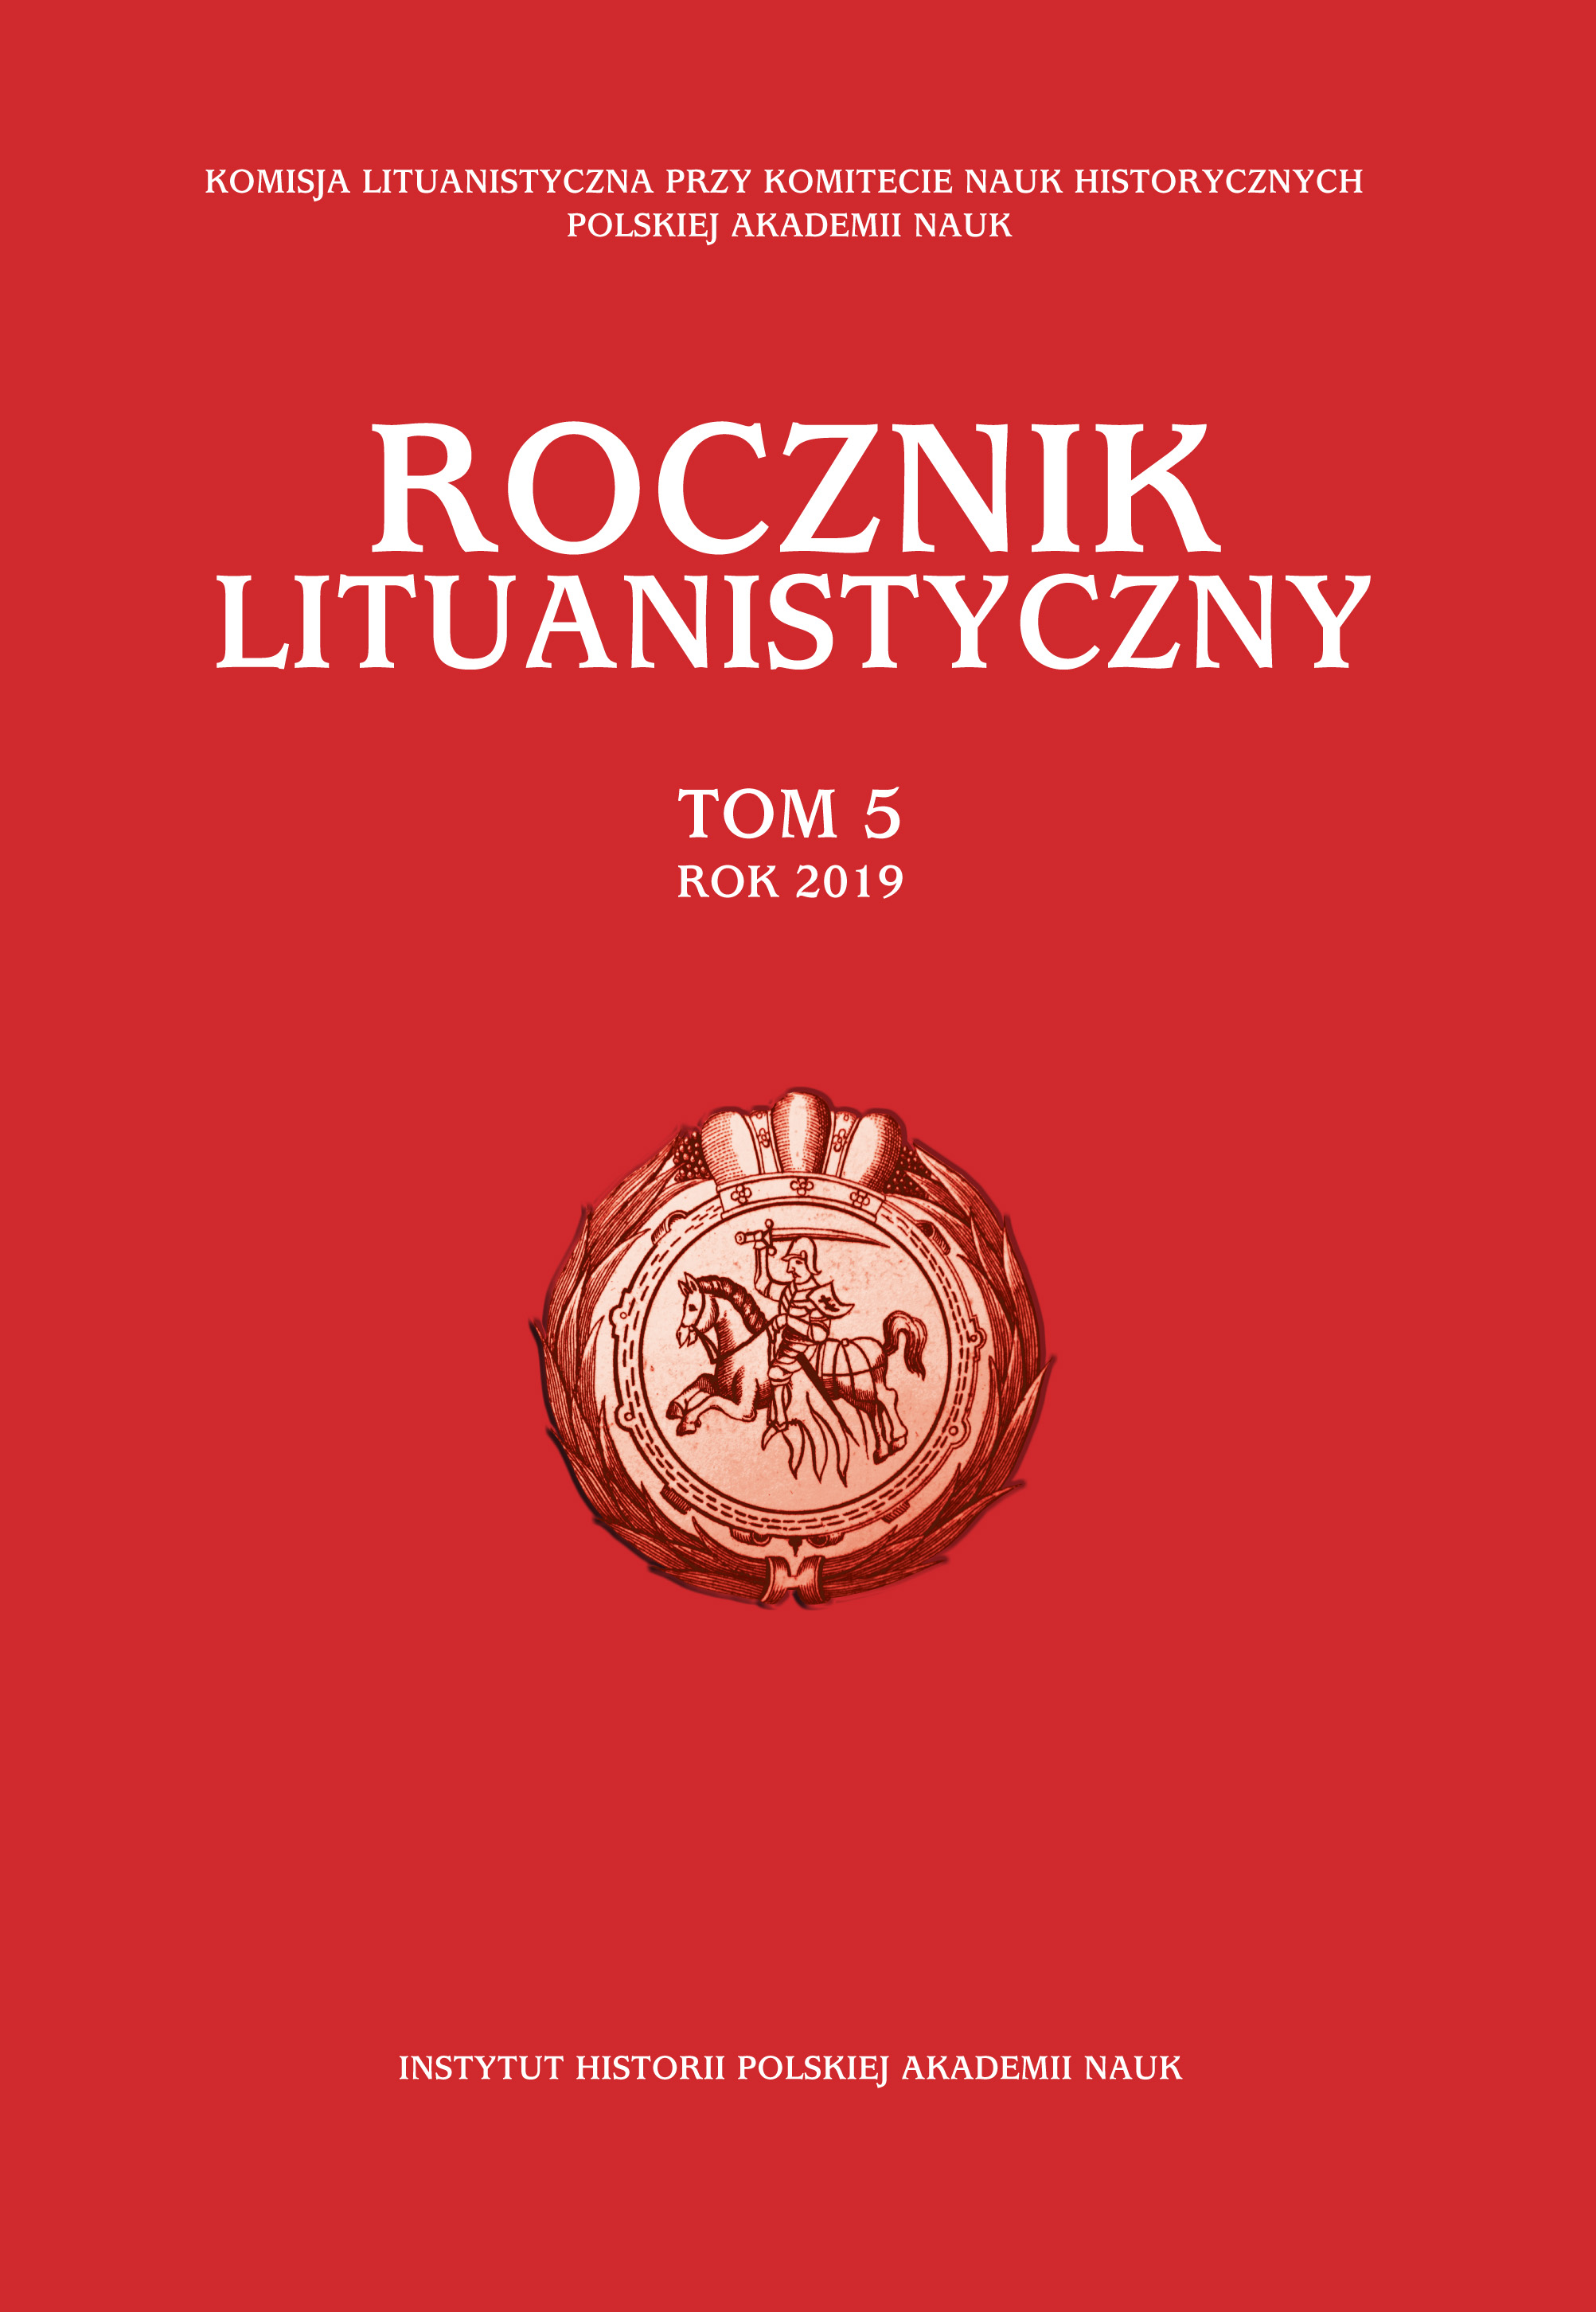 Itinerarium wielkiego księcia litewskiego Witolda: 4/5 sierpnia 1392–27 października 1430